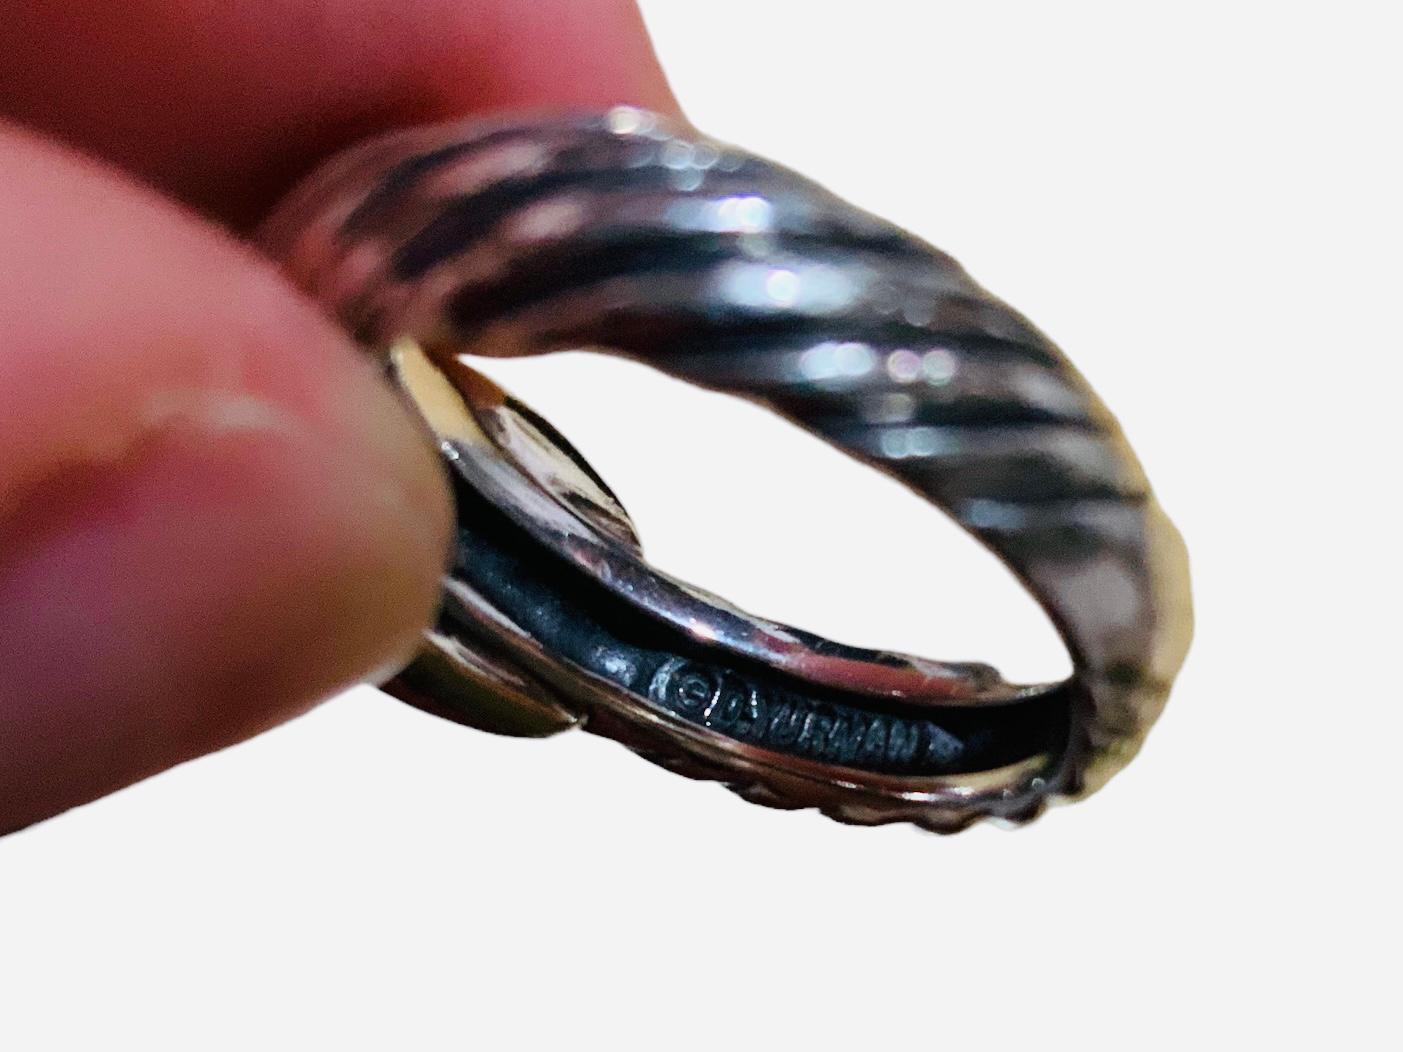 Dies ist ein 585 (14K) Gold und 925 Sterling Silber Ring. Es zeigt ein breites silbernes Seil, das mit zwei gekreuzten Bändern verziert ist.  breite Bänder in der Mitte. Er ist mit der Punze D.Yurman versehen. Auf der Innenseite der Ringschiene sind